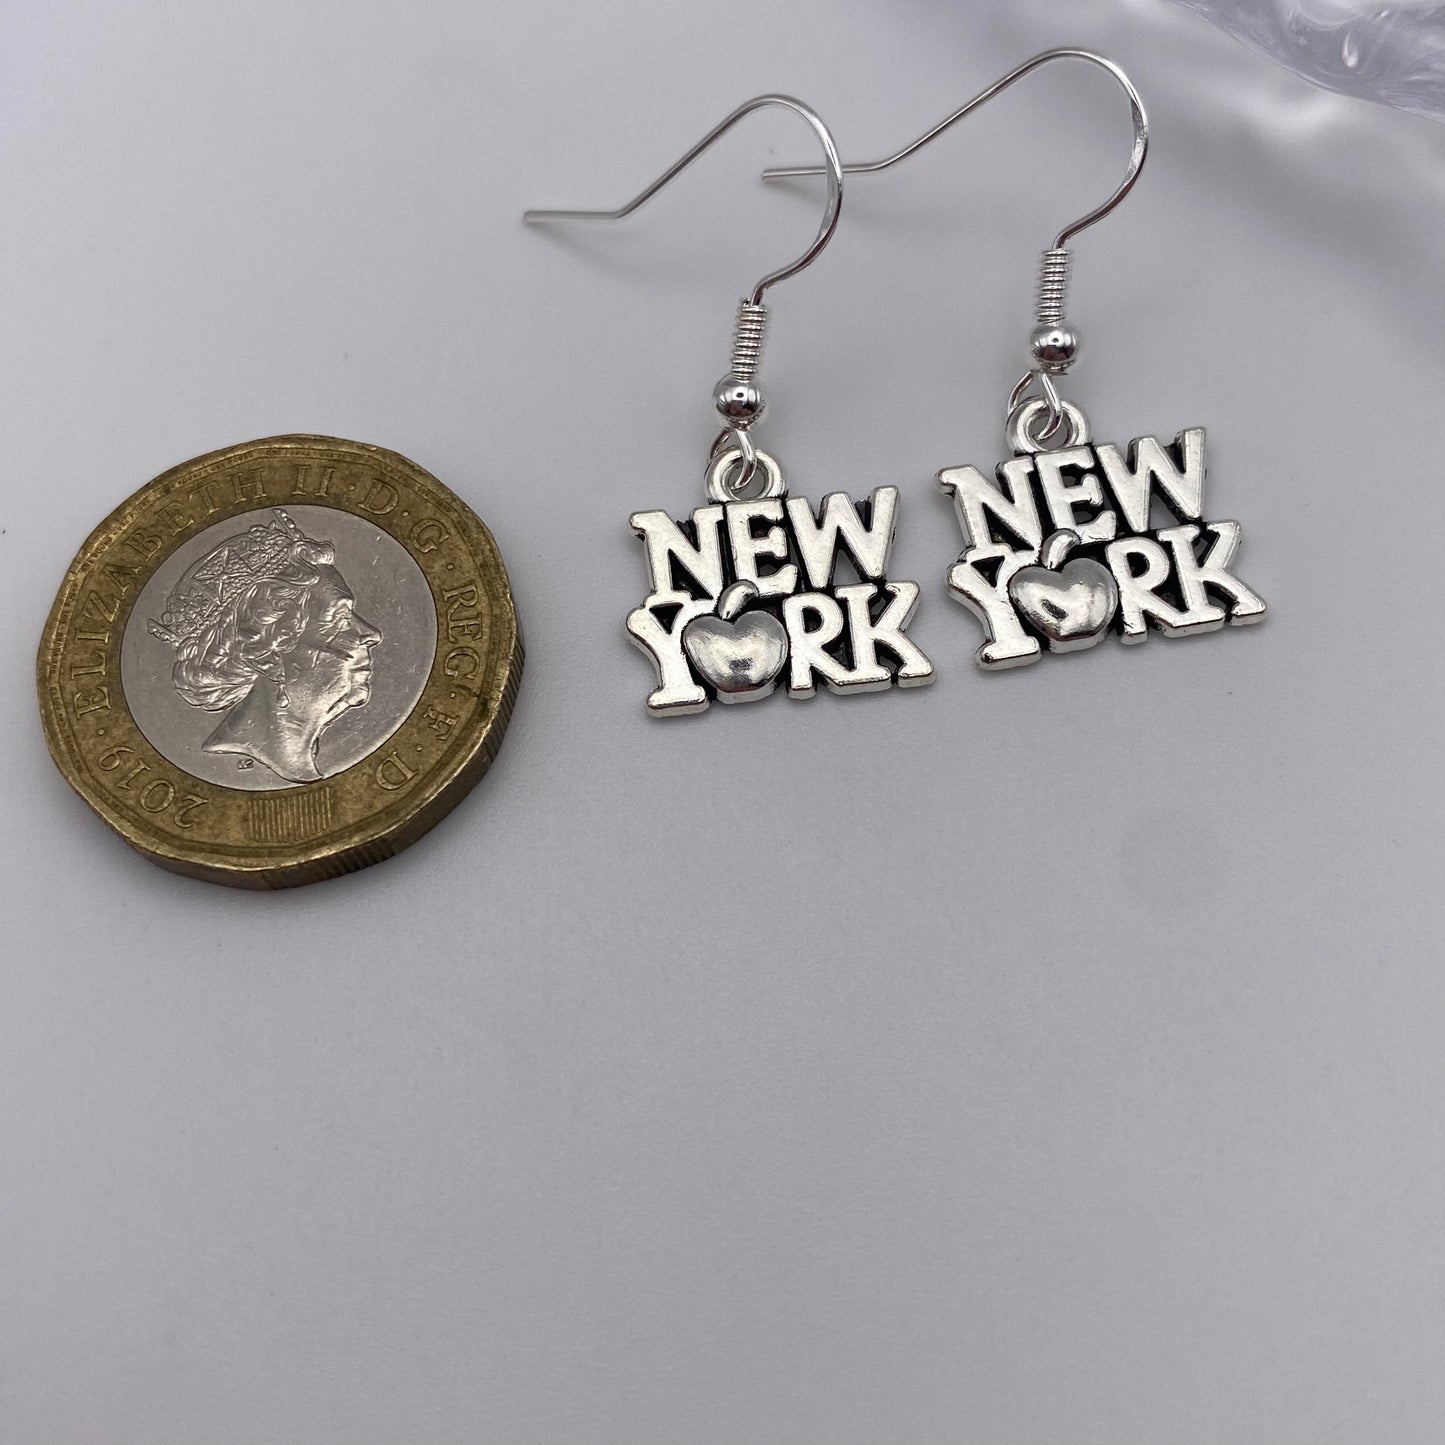 ‘New York’ Earrings